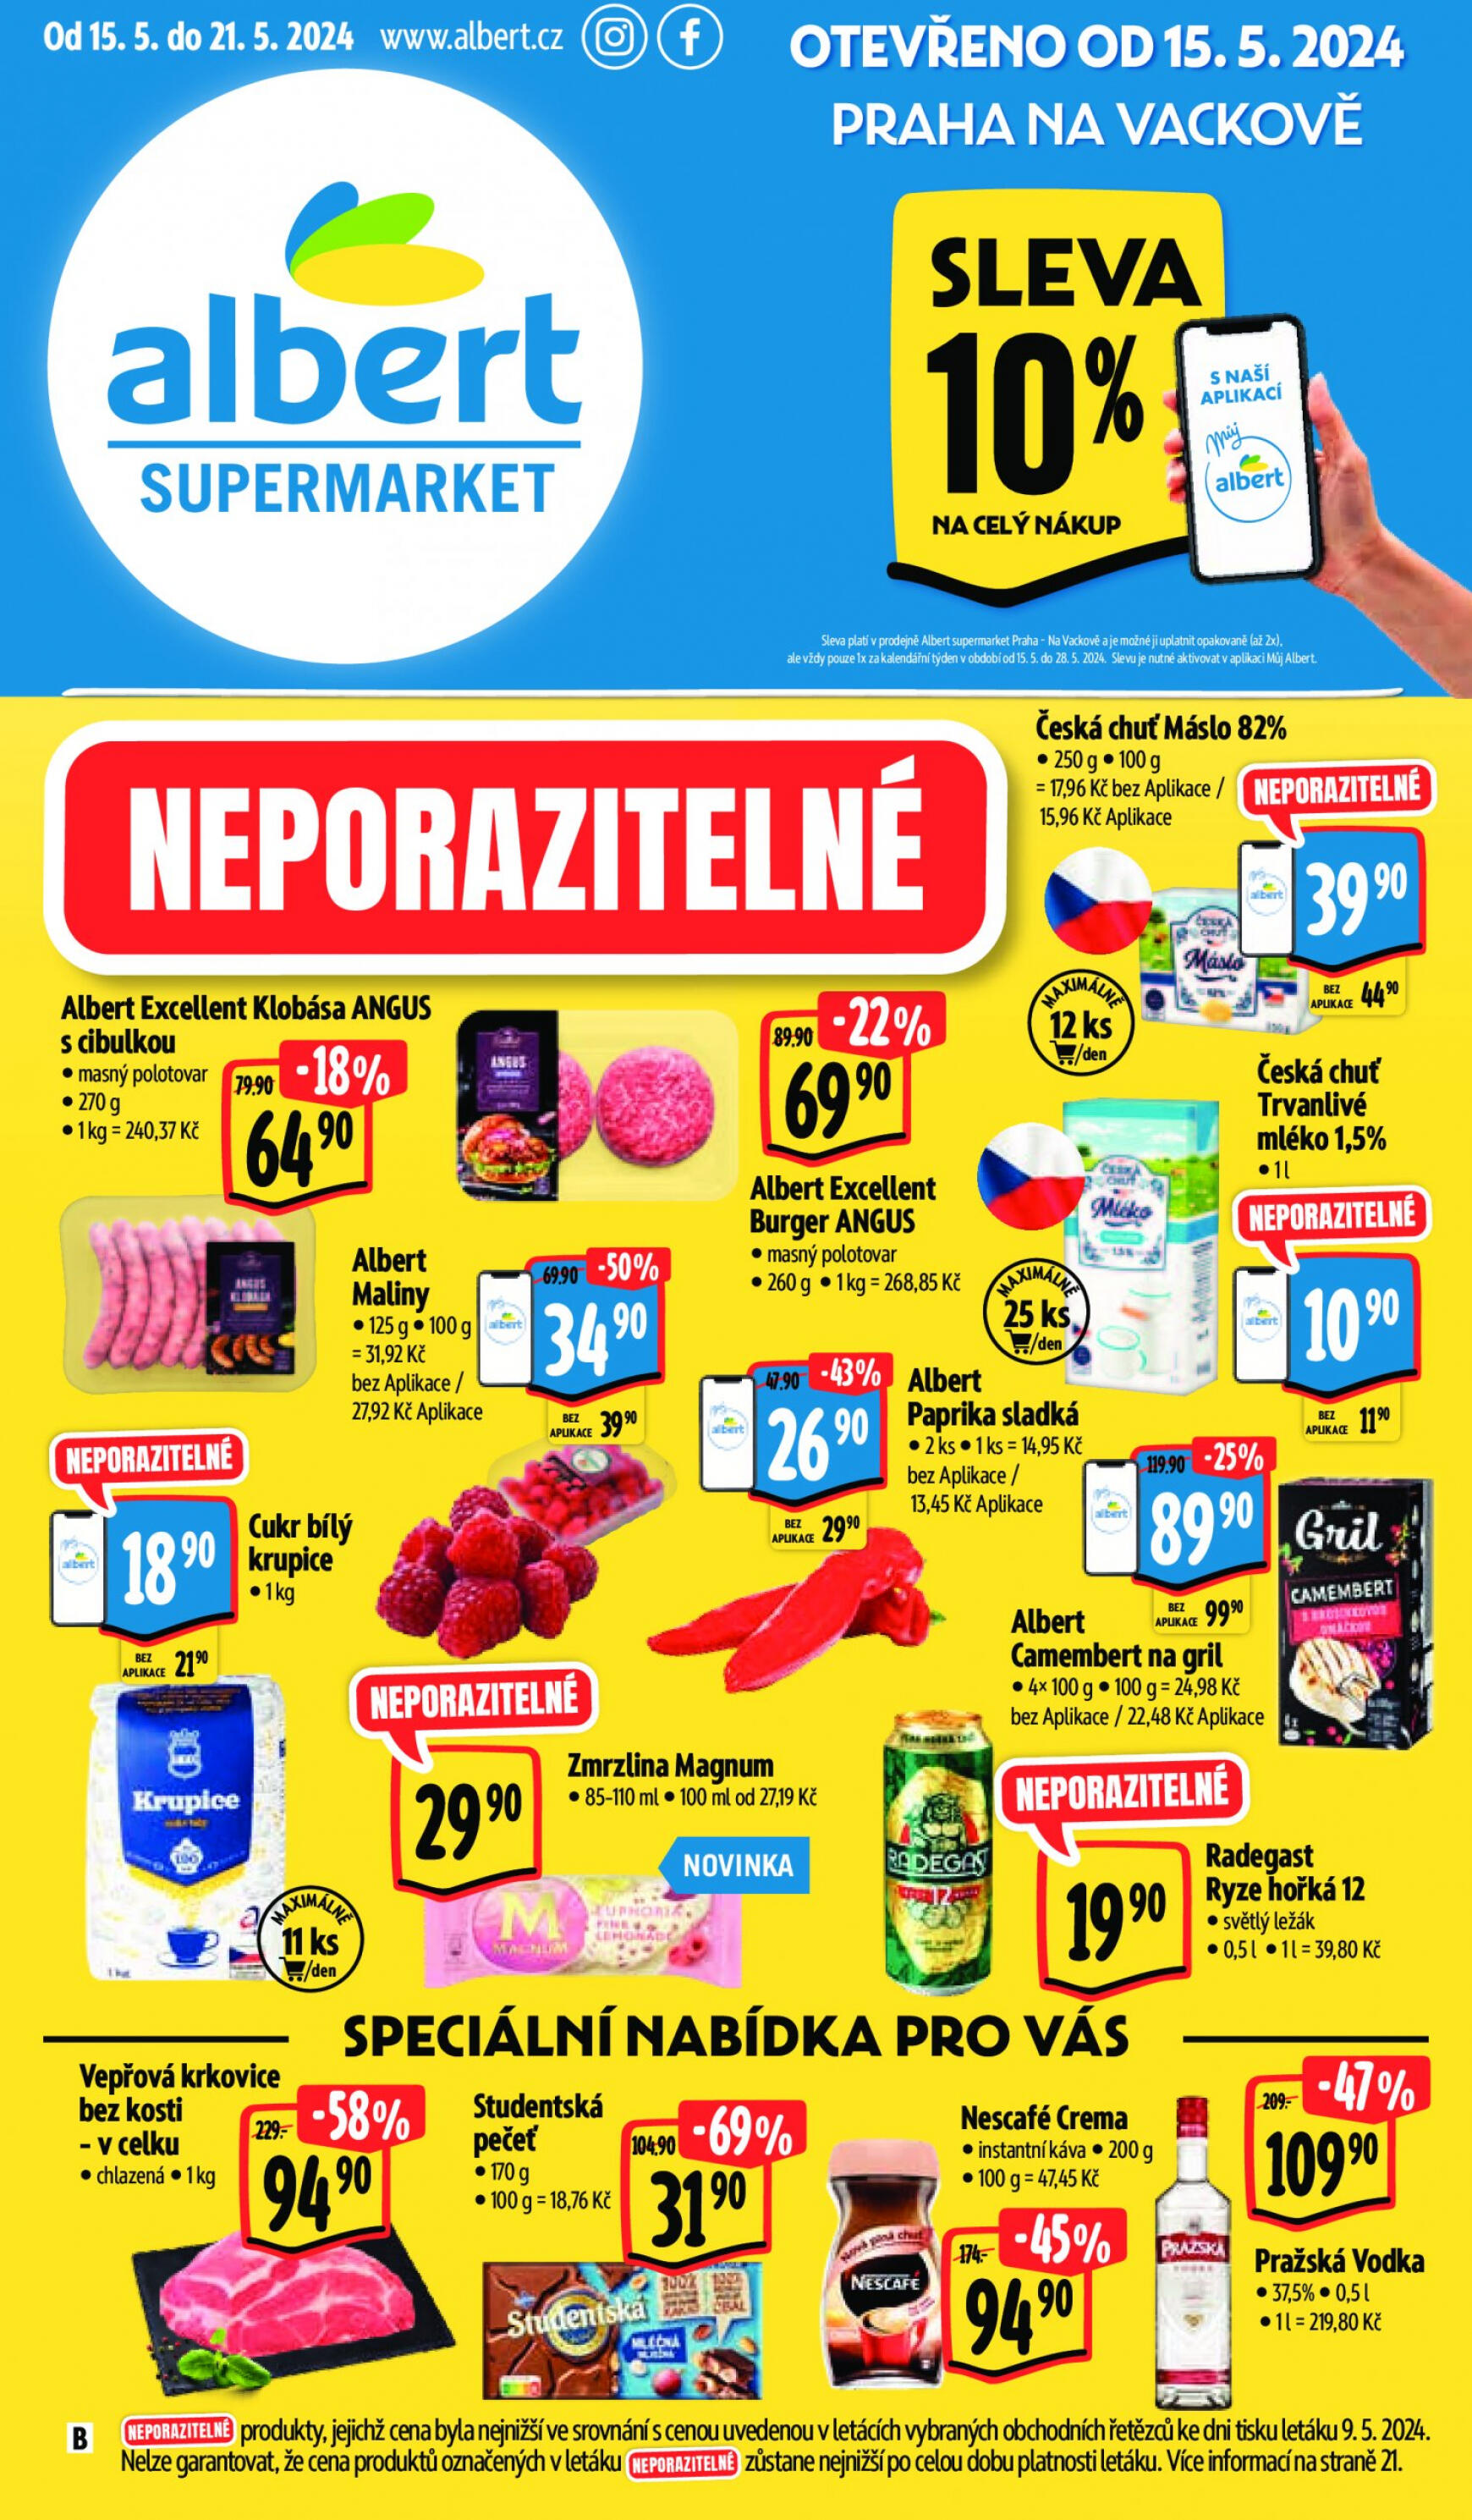 albert - Leták Albert Supermarket - Praha - Na Vackově aktuální 15.05. - 21.05.